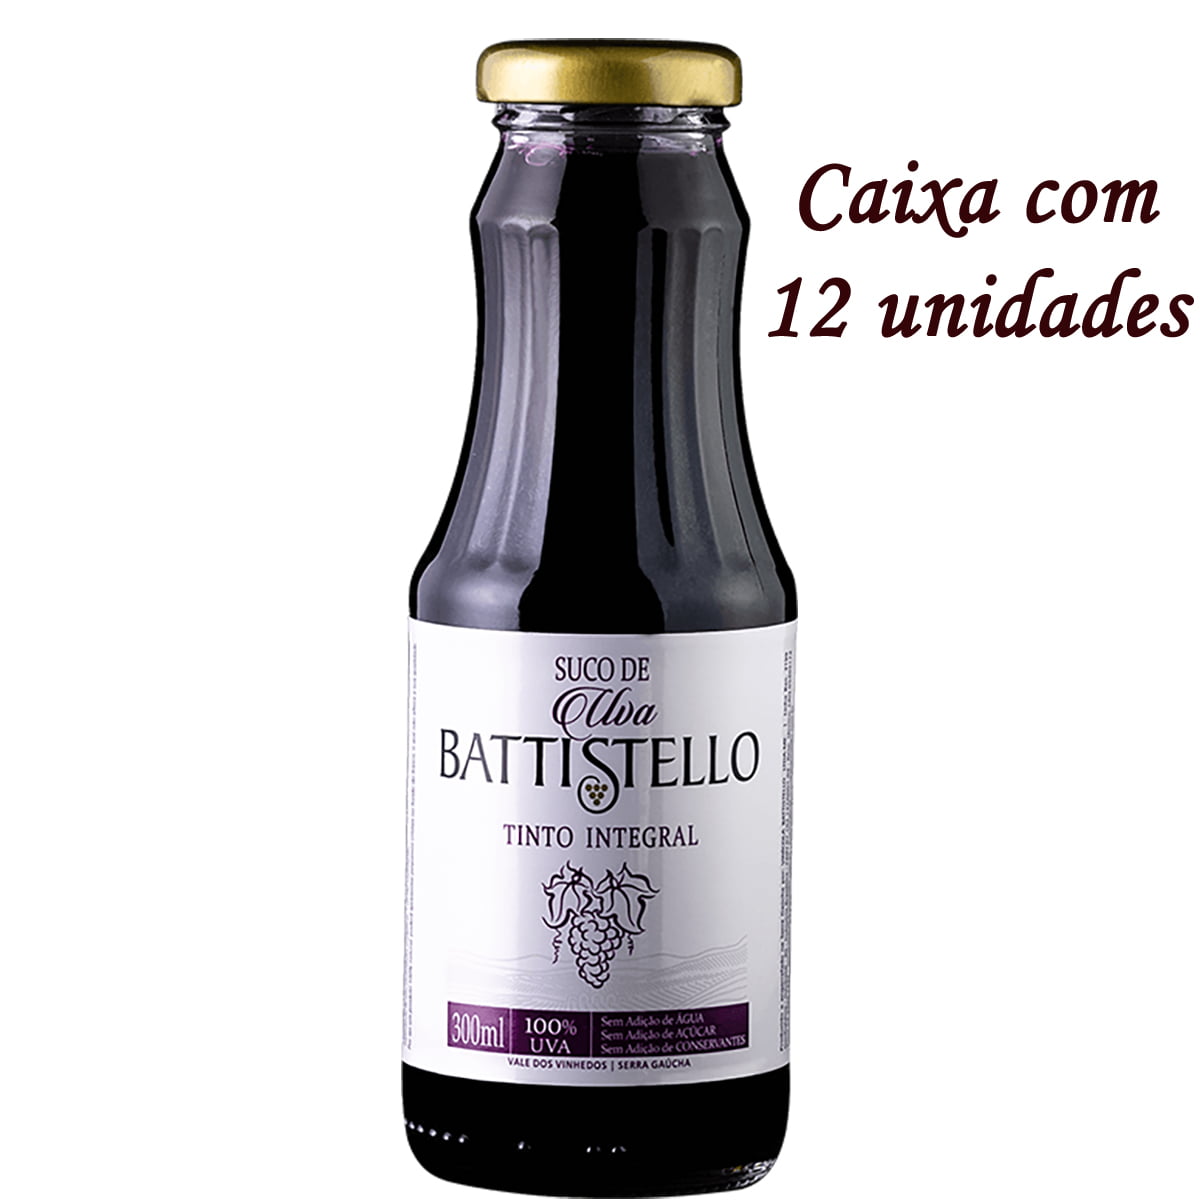 Battistello Suco de Uva Tinto Integral 300ml C/12